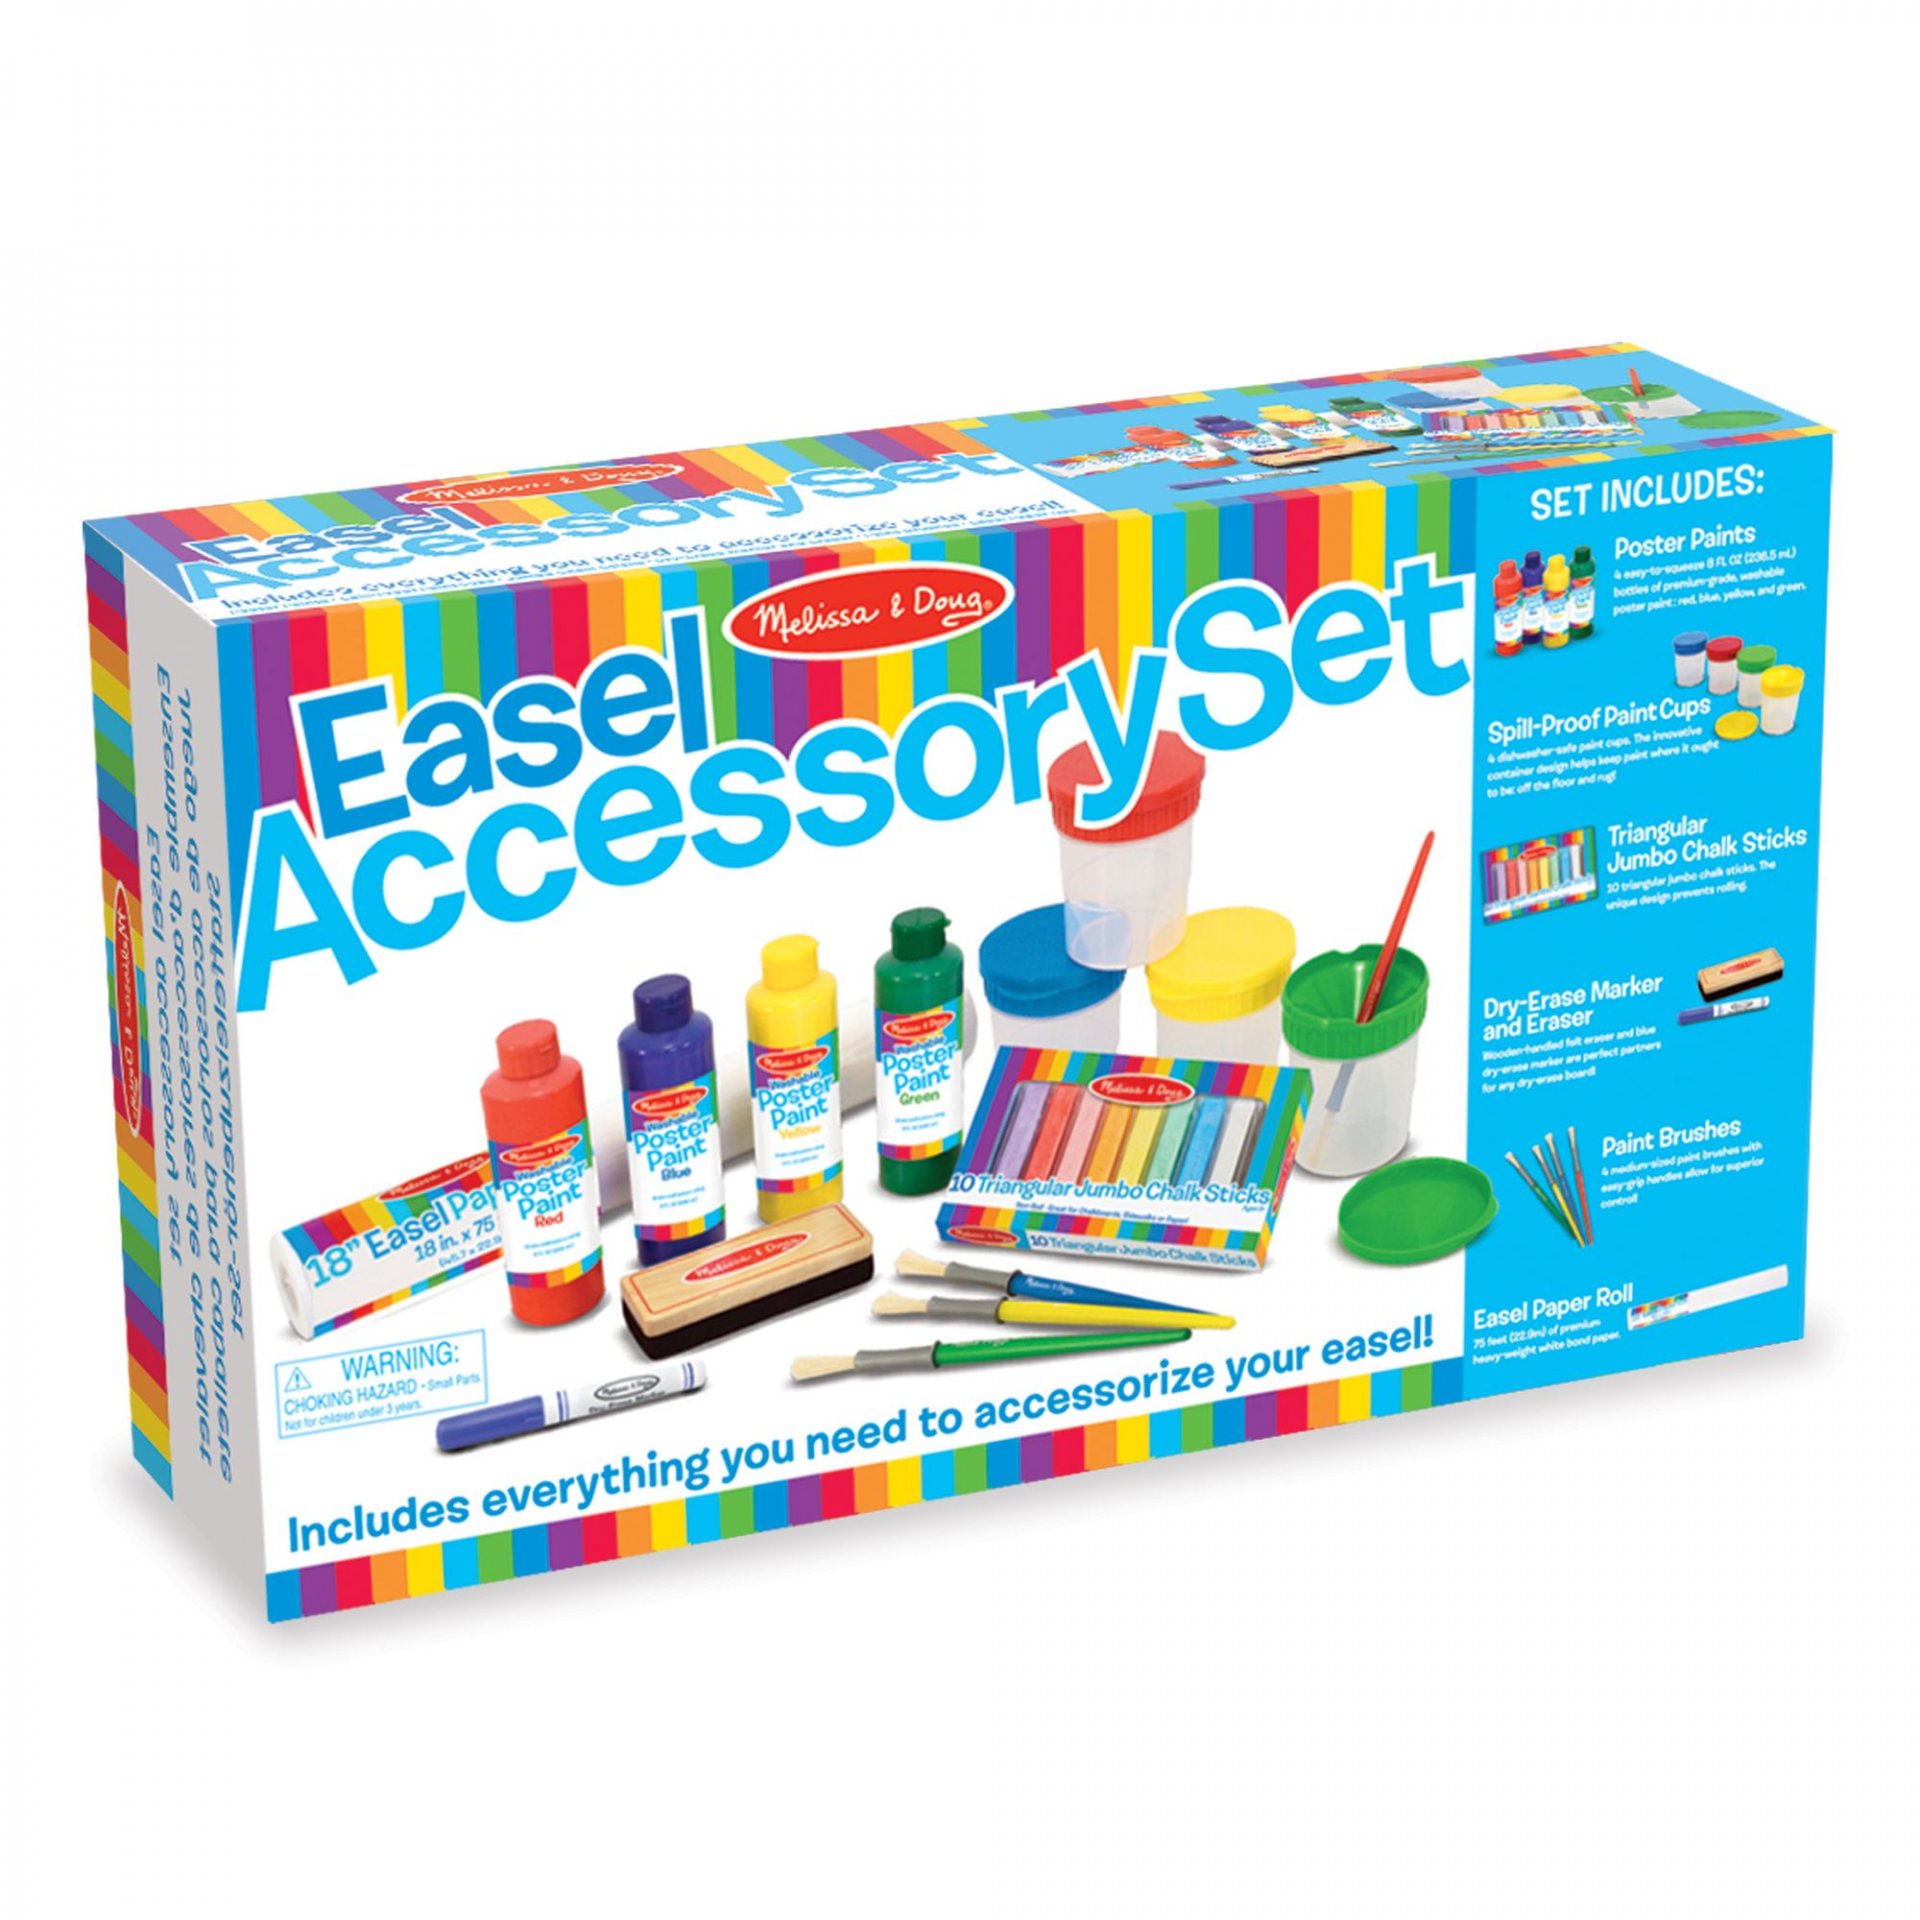  ชุดอุปกรณ์ศิลปะ Easel Accessory Set รุ่น 4145 ยี่ห้อ Melissa & Doug (นำเข้า USA)